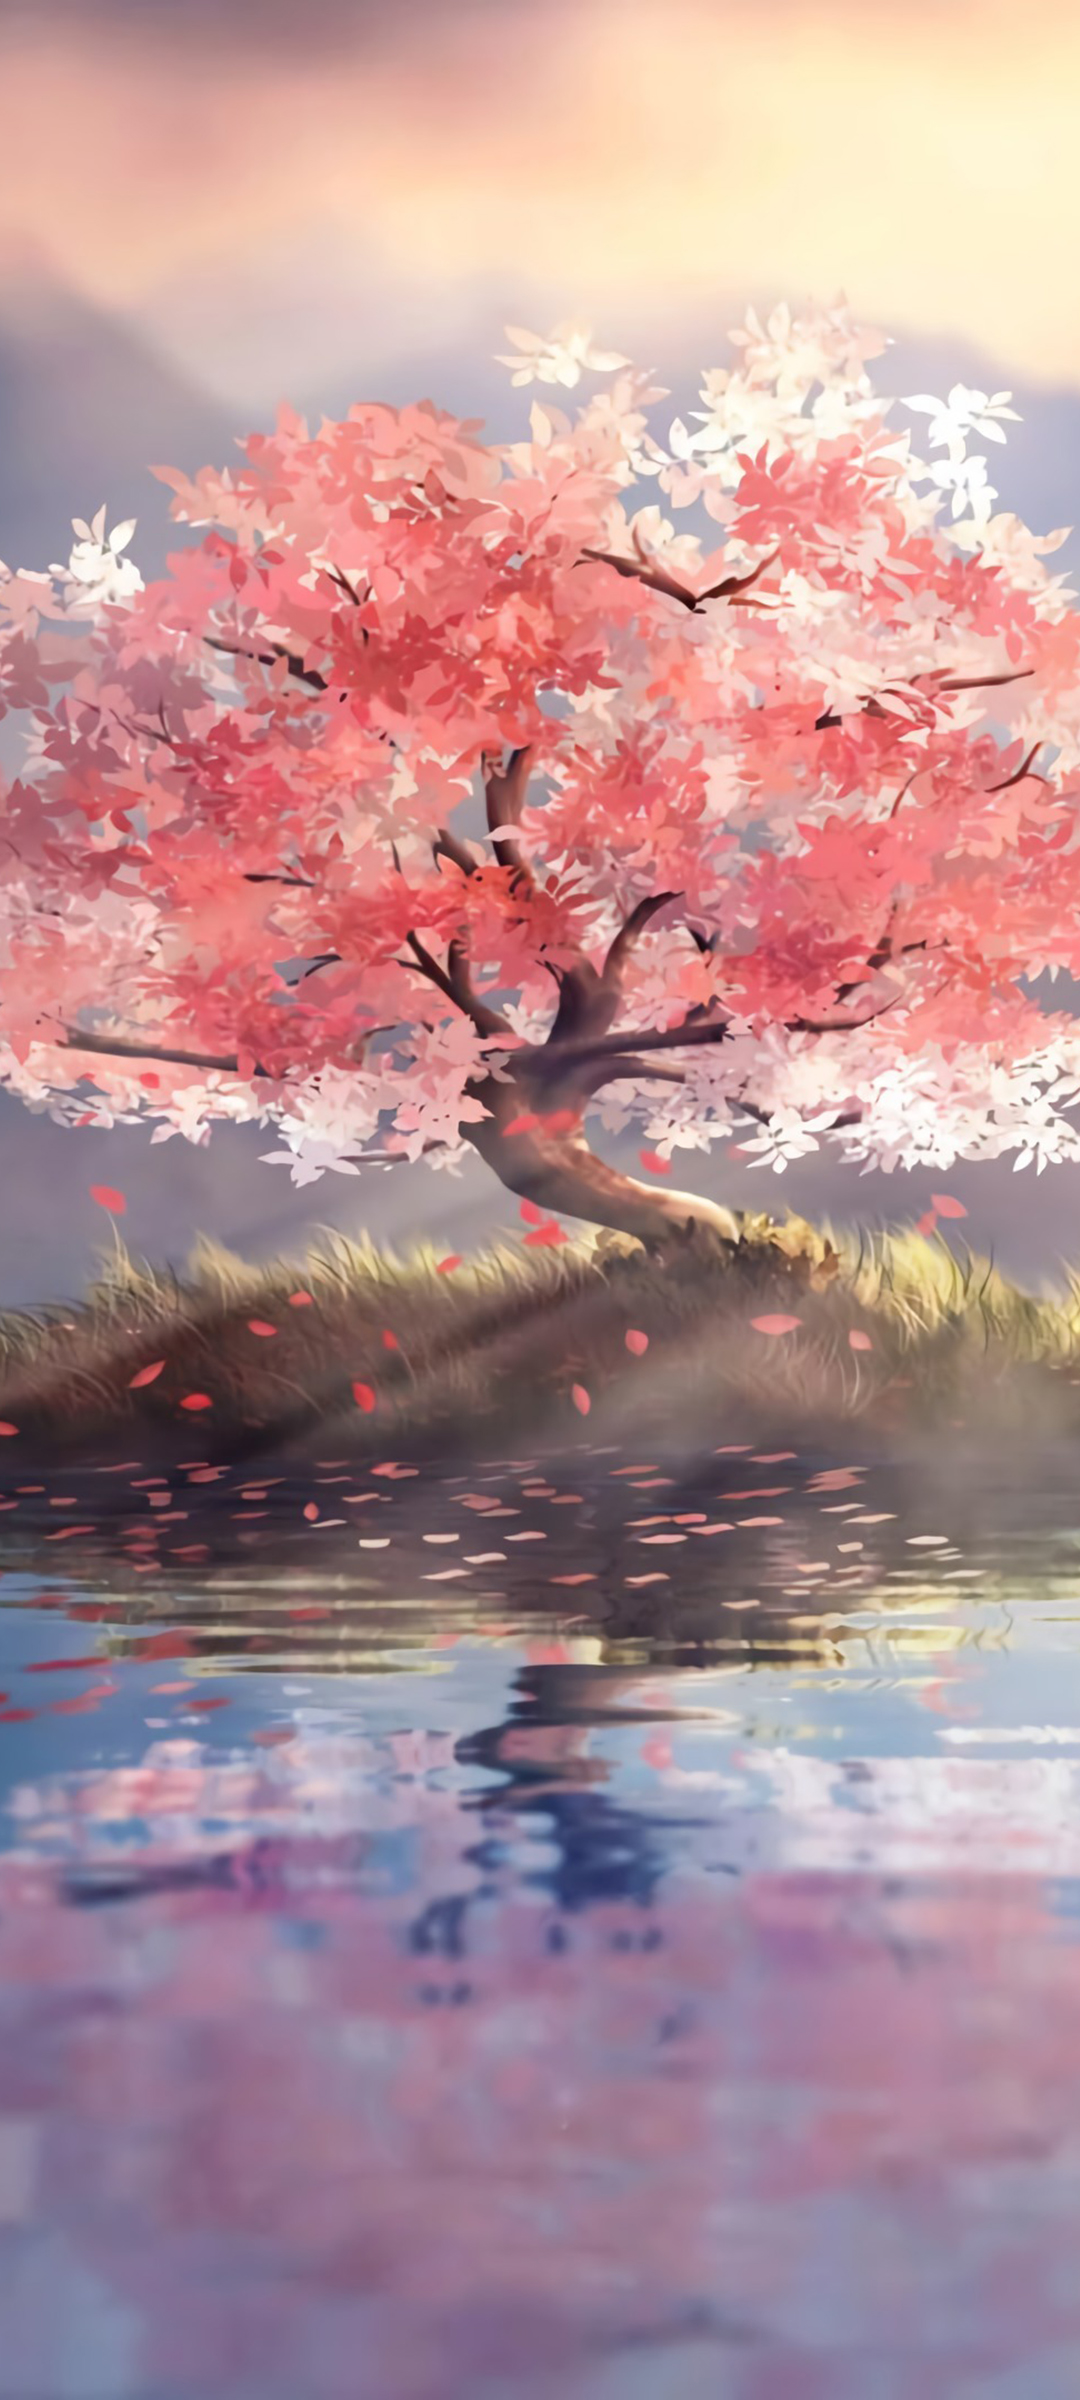 红色树叶树 孤单的树 湖水 中央 唯美风景 手机壁纸